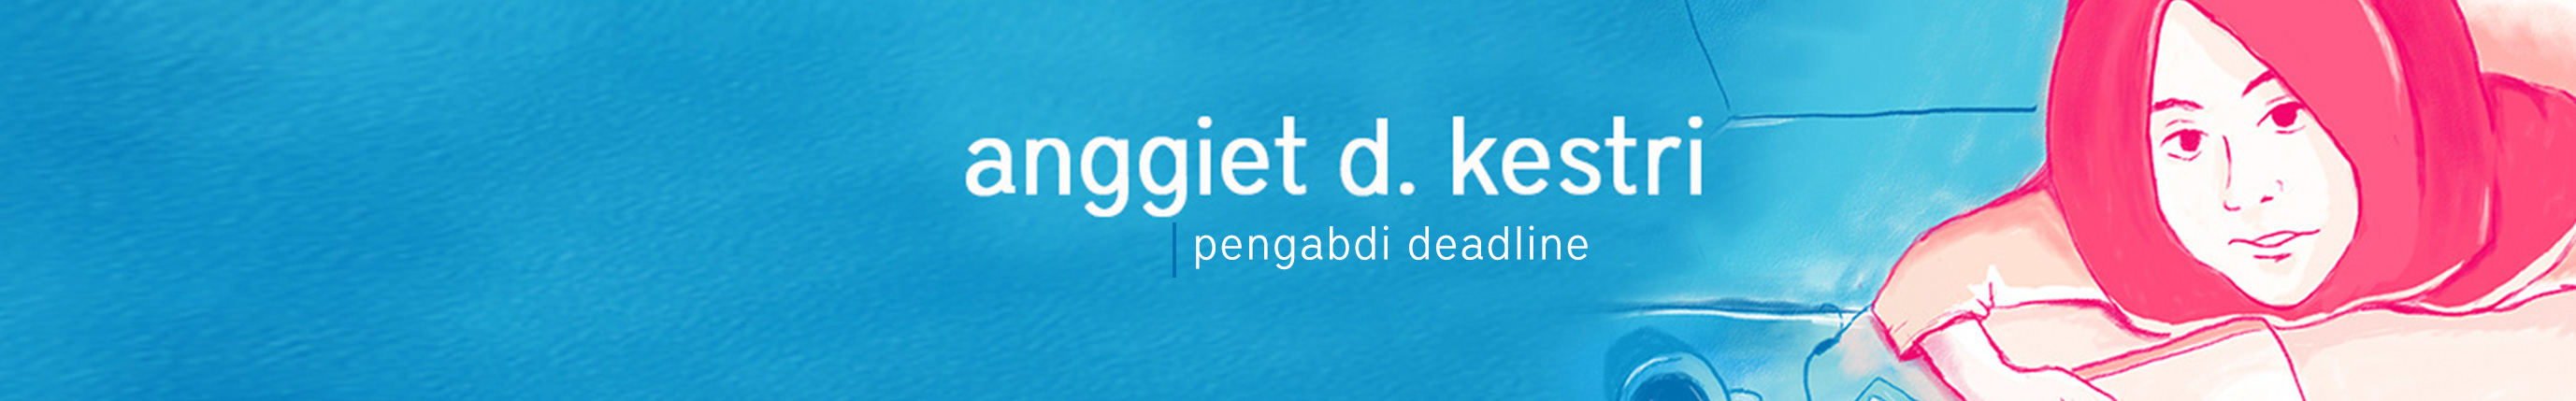 Anggiet D. Kestri's profile banner